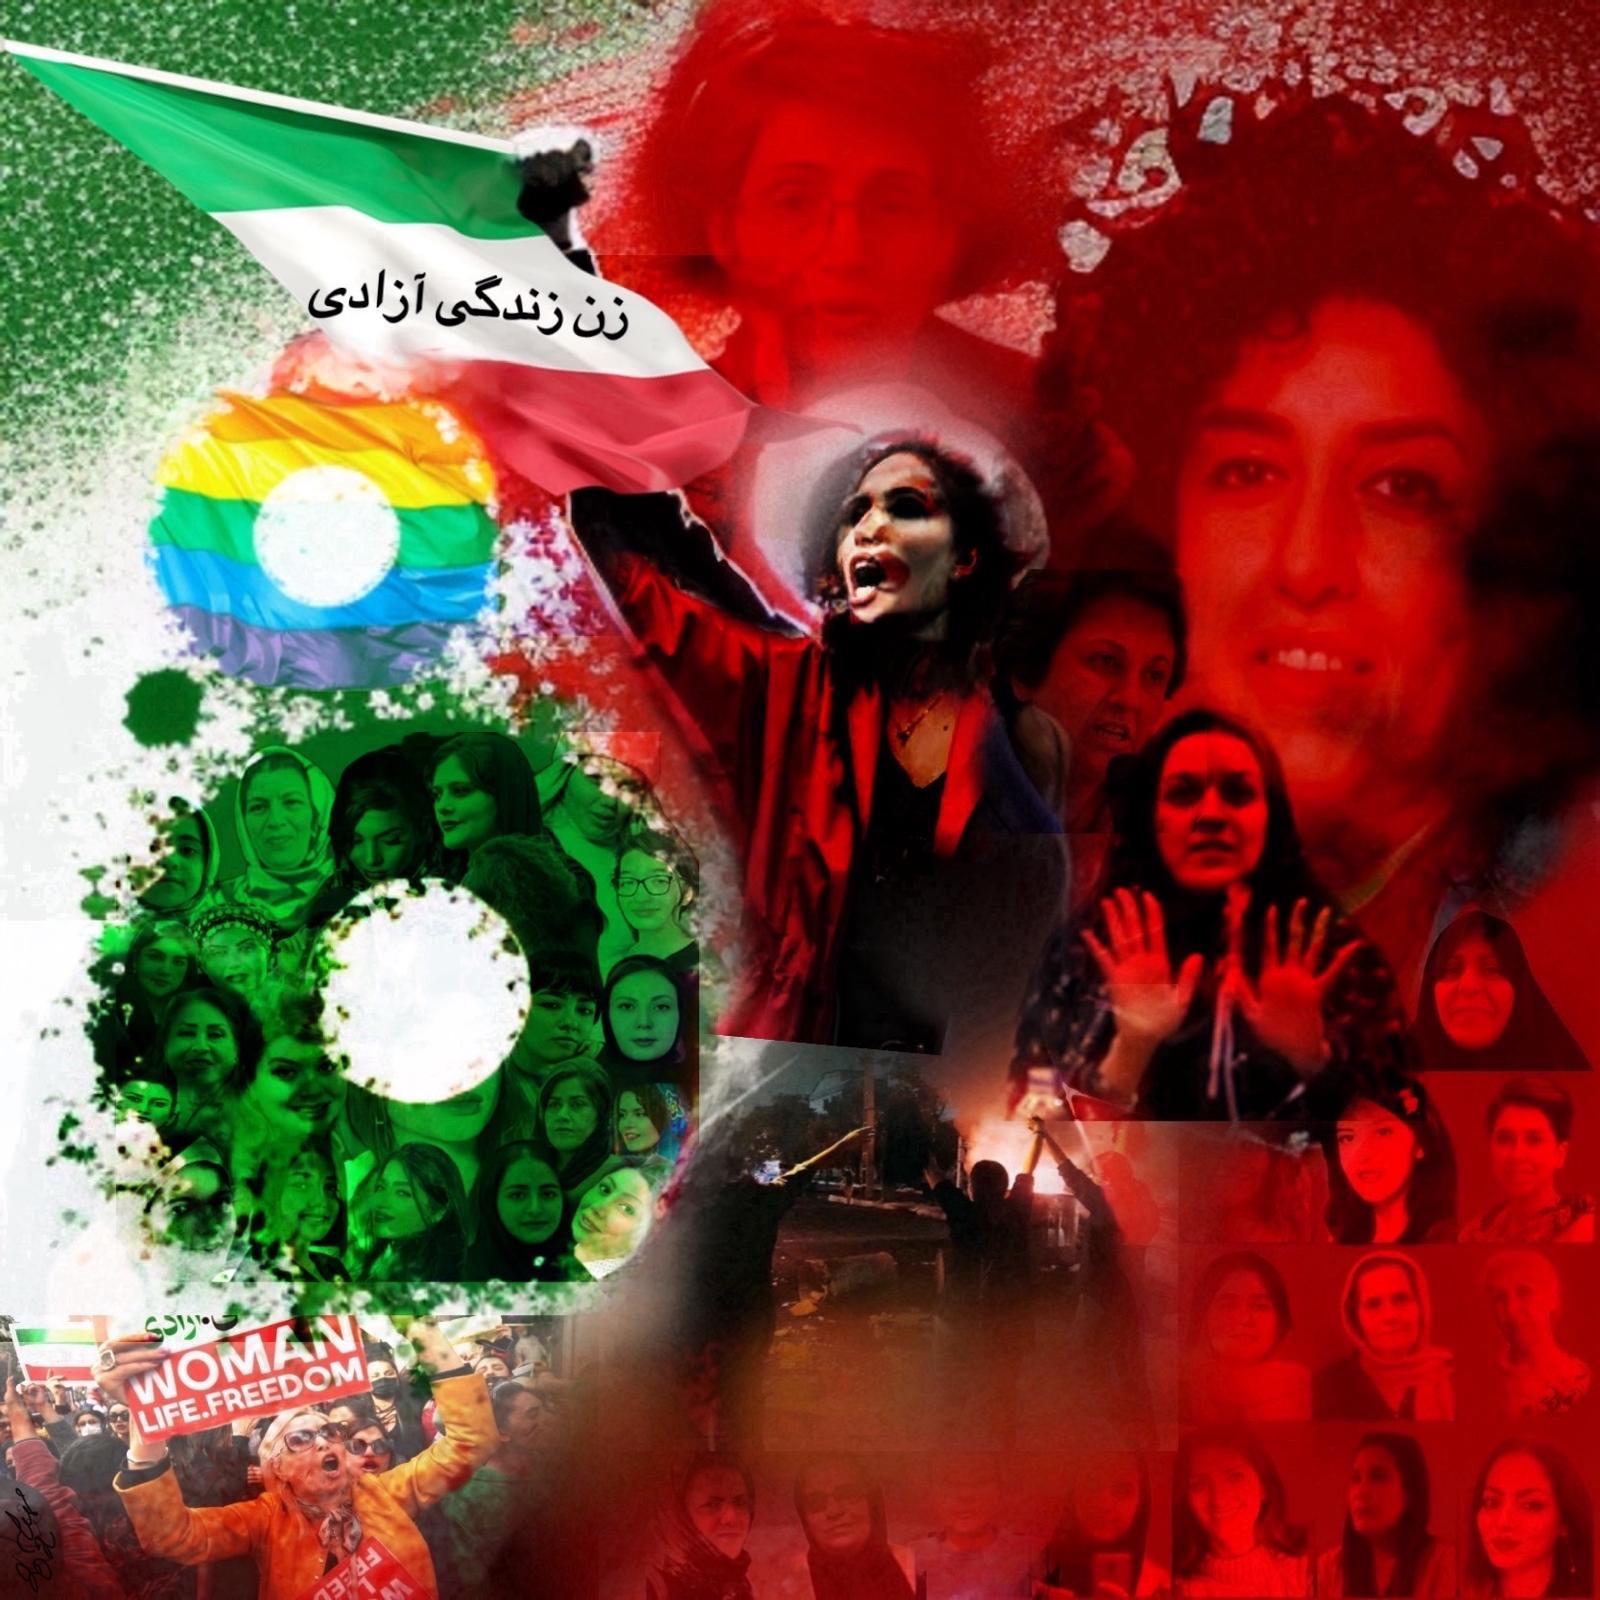 زن، زندگی، آزادی: صد سال جنبش زنان ایرانی و همچنان مساله روز و حاد